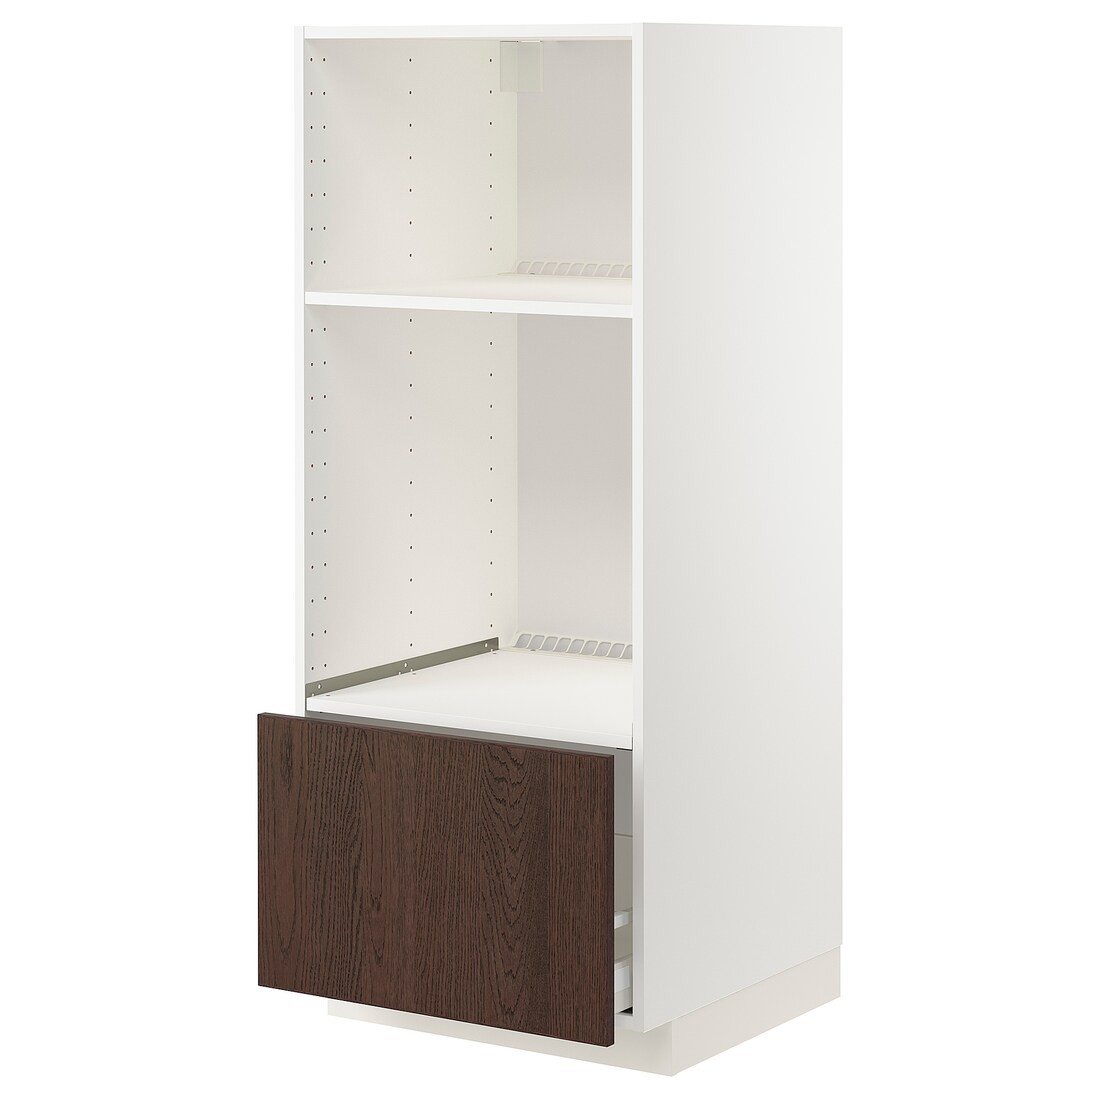 IKEA METOD МЕТОД / MAXIMERA МАКСИМЕРА Высокий шкаф для духовки / СВЧ, белый / Sinarp коричневый, 60x60x140 см 99405110 | 994.051.10